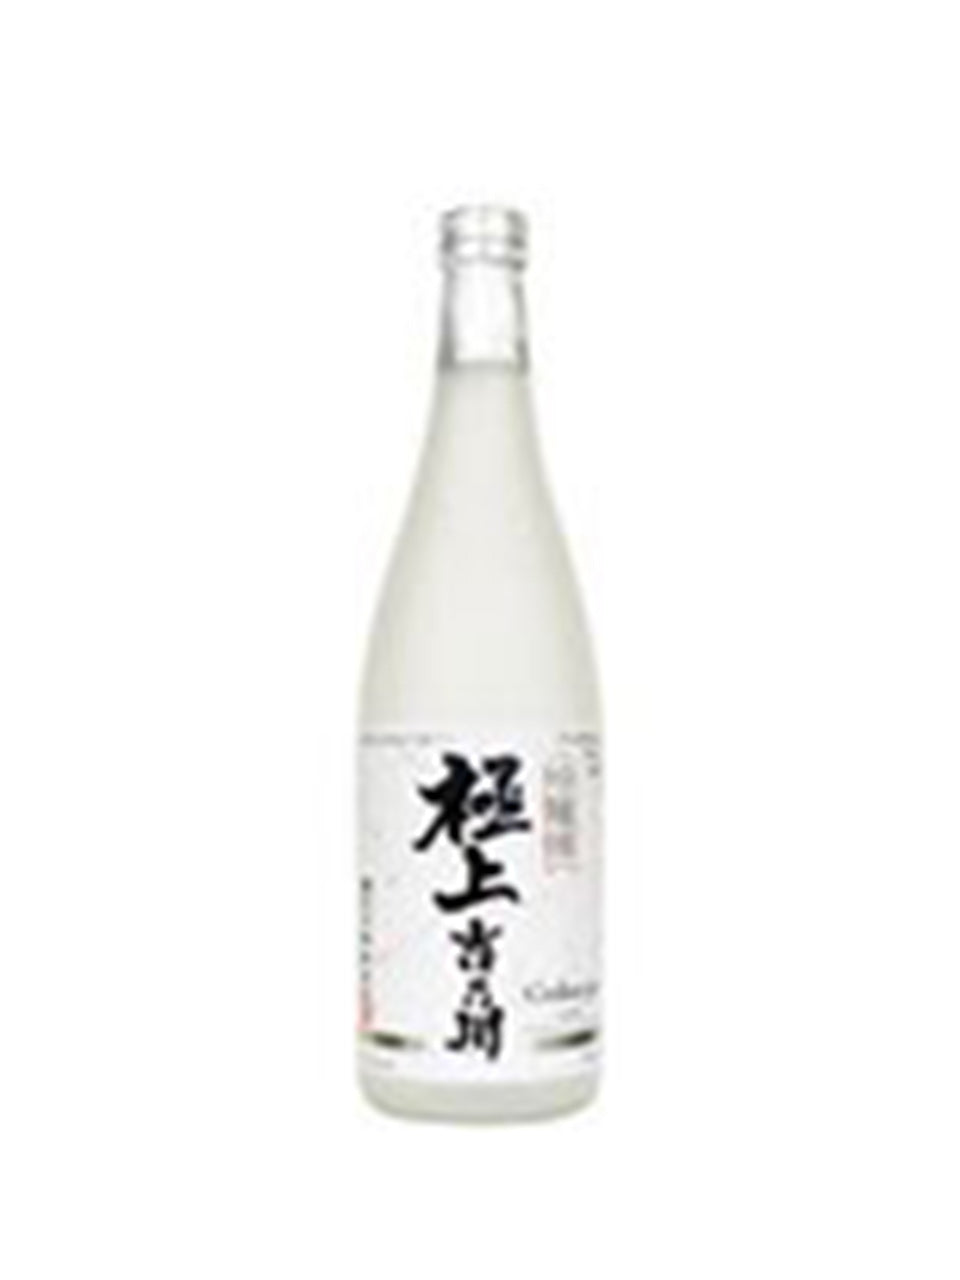 Yoshi No Gawa Gokujo Ginjo Sake 720 ml bottle